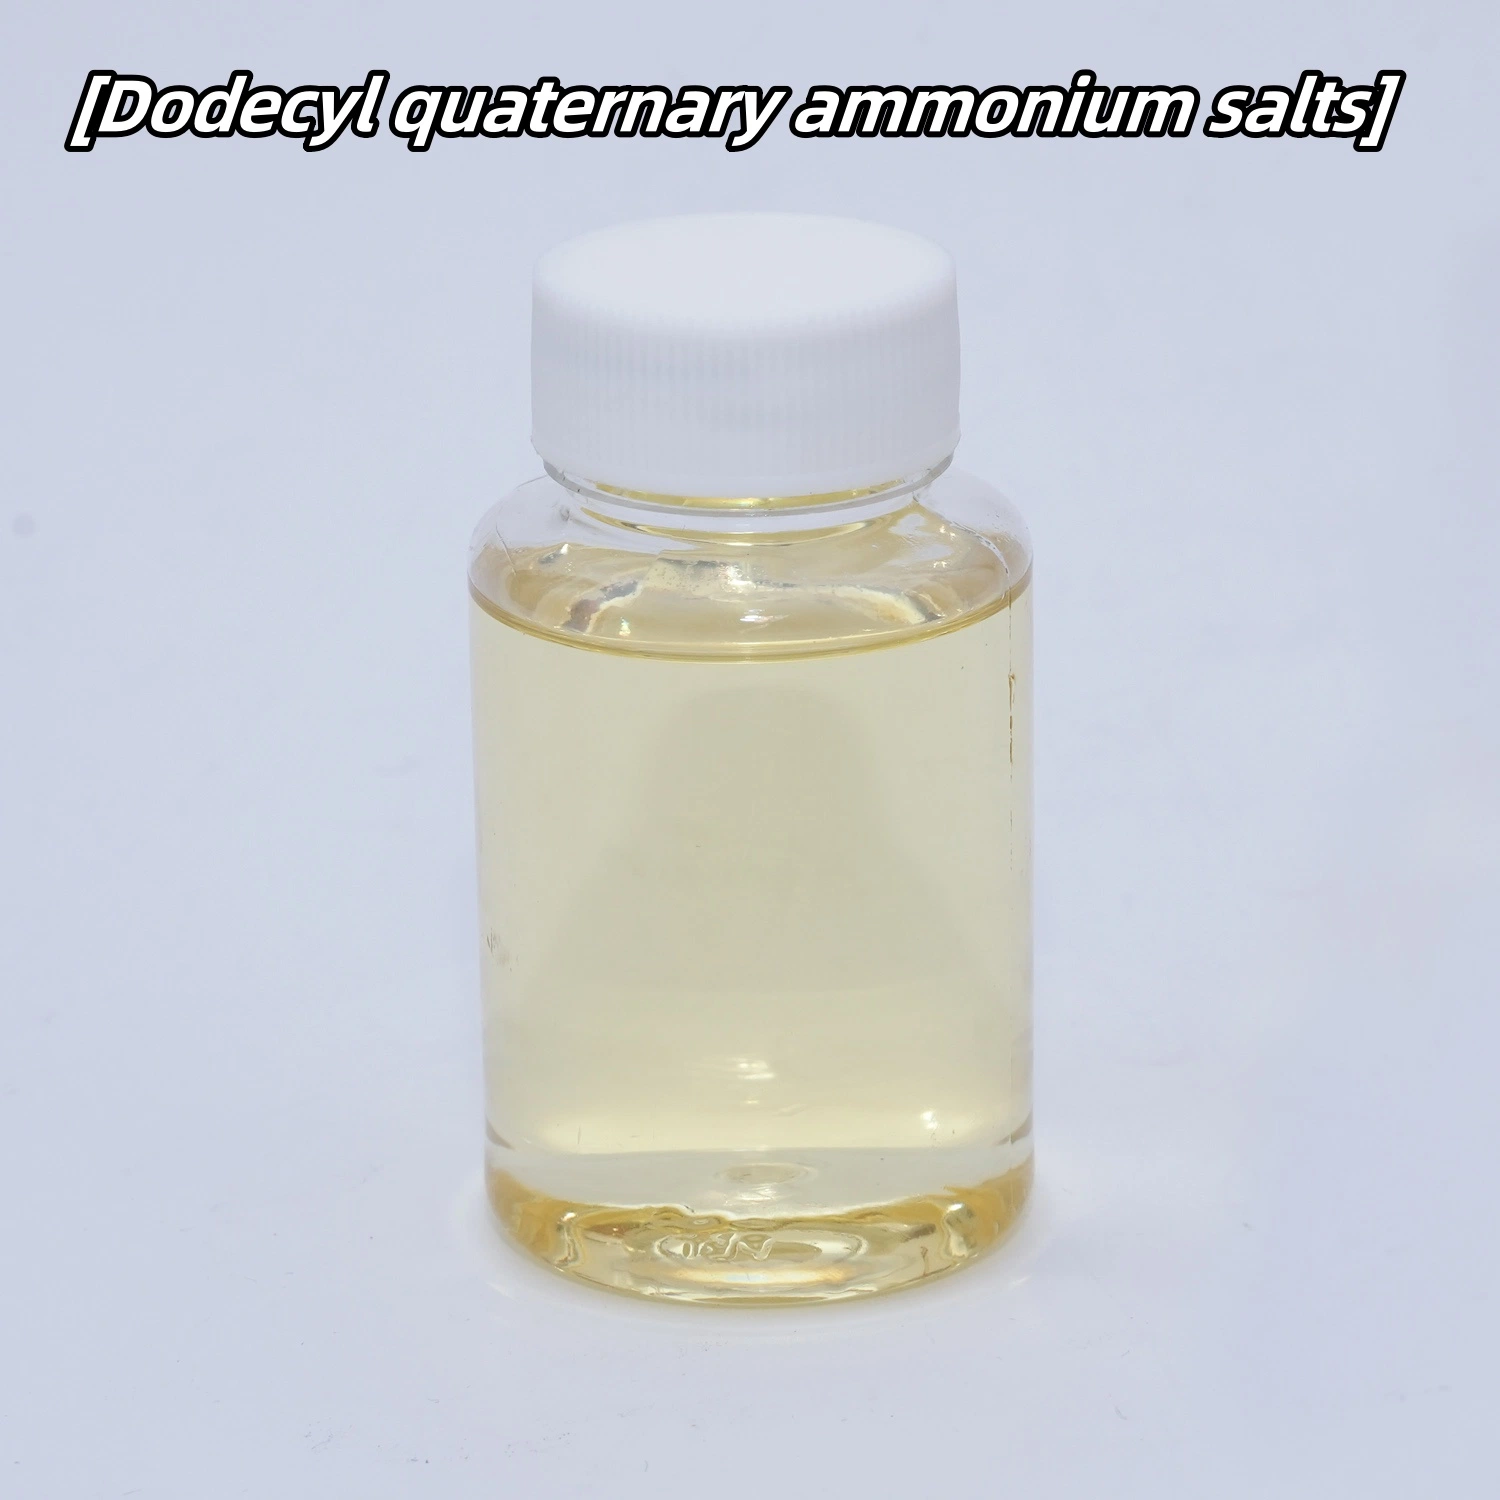 Sels d'ammonium quaternaire de dodécyle ; Agents bactéricides et antifongiques ; Adoucissant ; Agents antistatiques ; Émulsifiants ; Revitalisant.